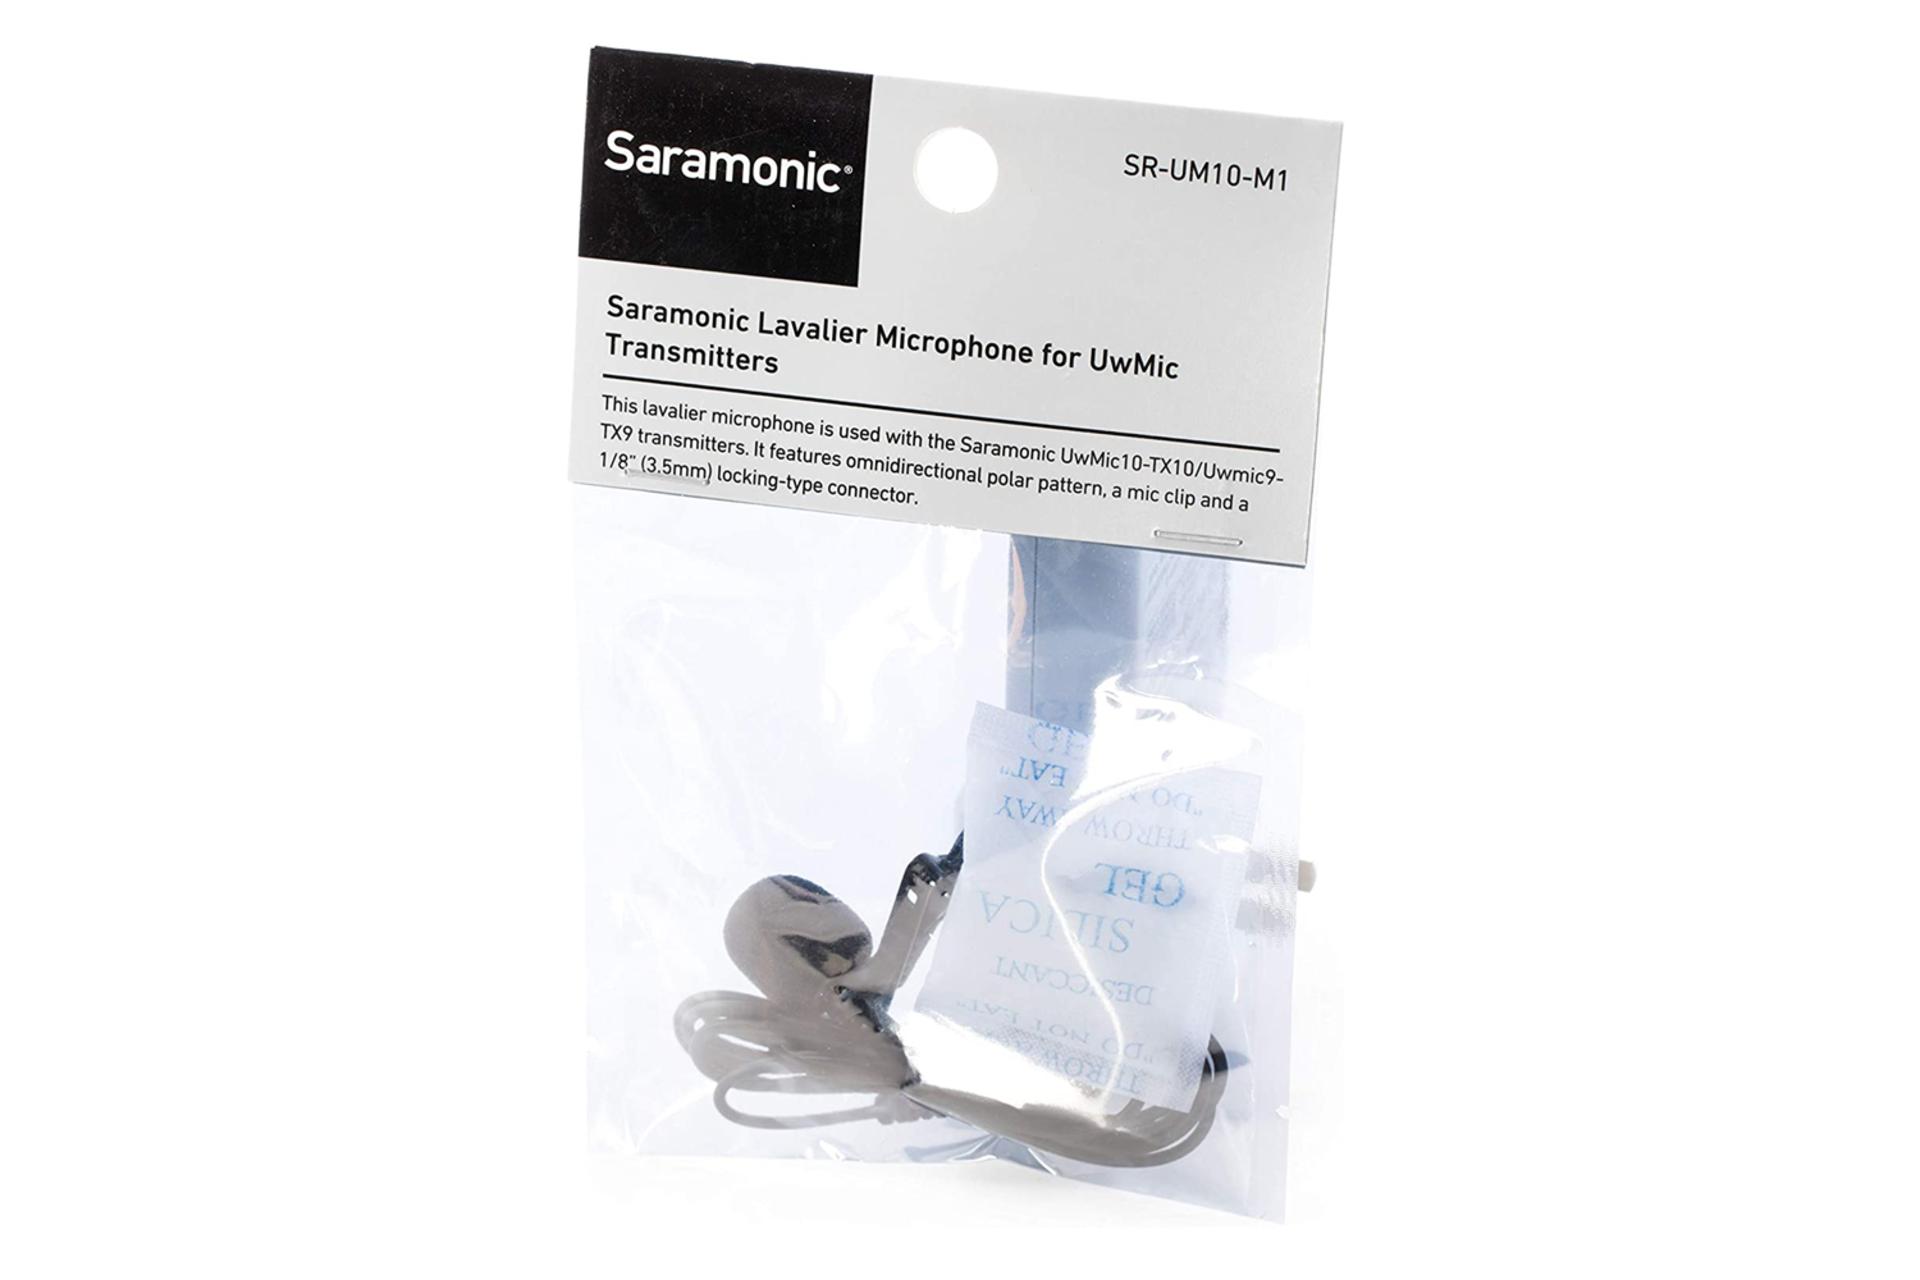 میکروفون سارامونیک Saramonic SR-UM10-M1